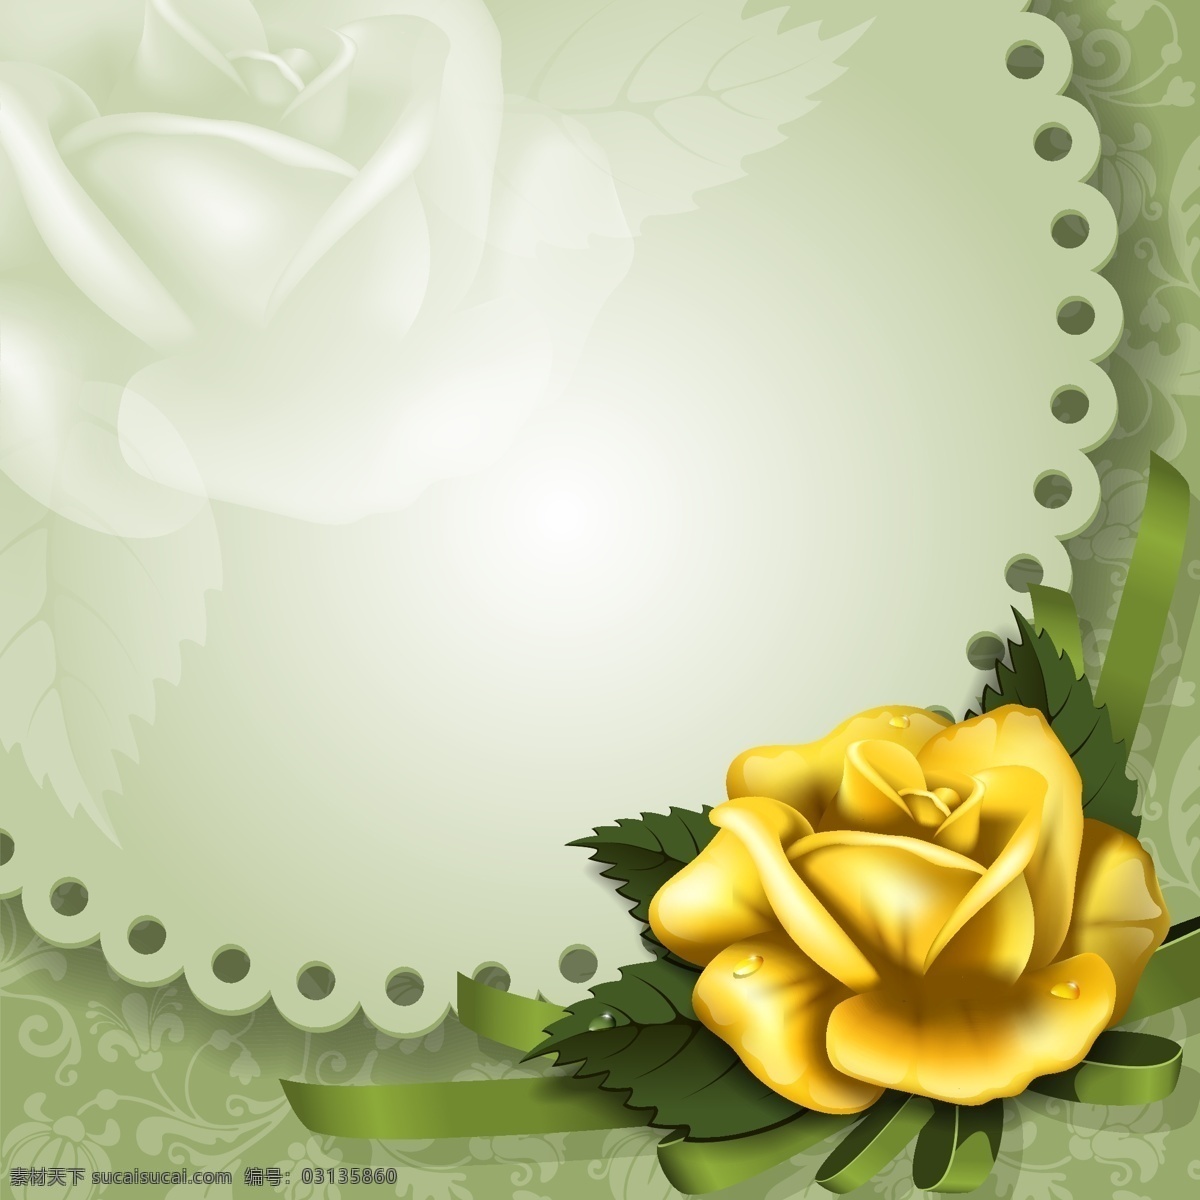 金色 玫瑰 装饰 边框 矢量 背景 花卉 花纹 露珠 玫瑰花 矢量图 鲜花 植物 家居装饰素材